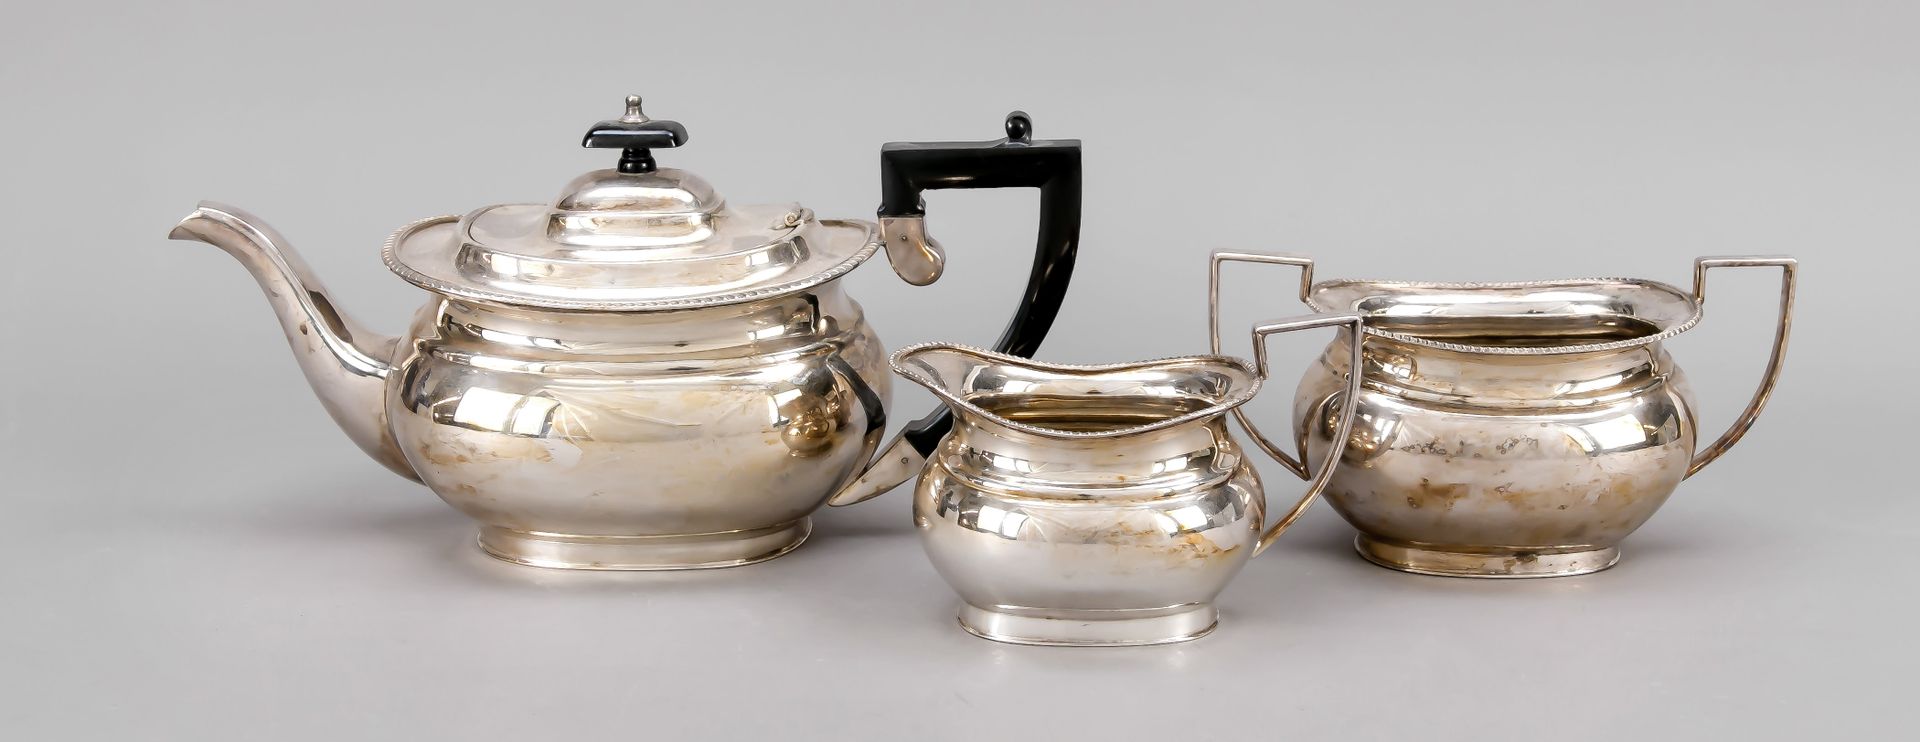 Null 三件套茶具，英国，20世纪，电镀，长方形支架，光滑的主体，边缘有绳索装饰，壶身有铰链翻盖，高至15.5厘米